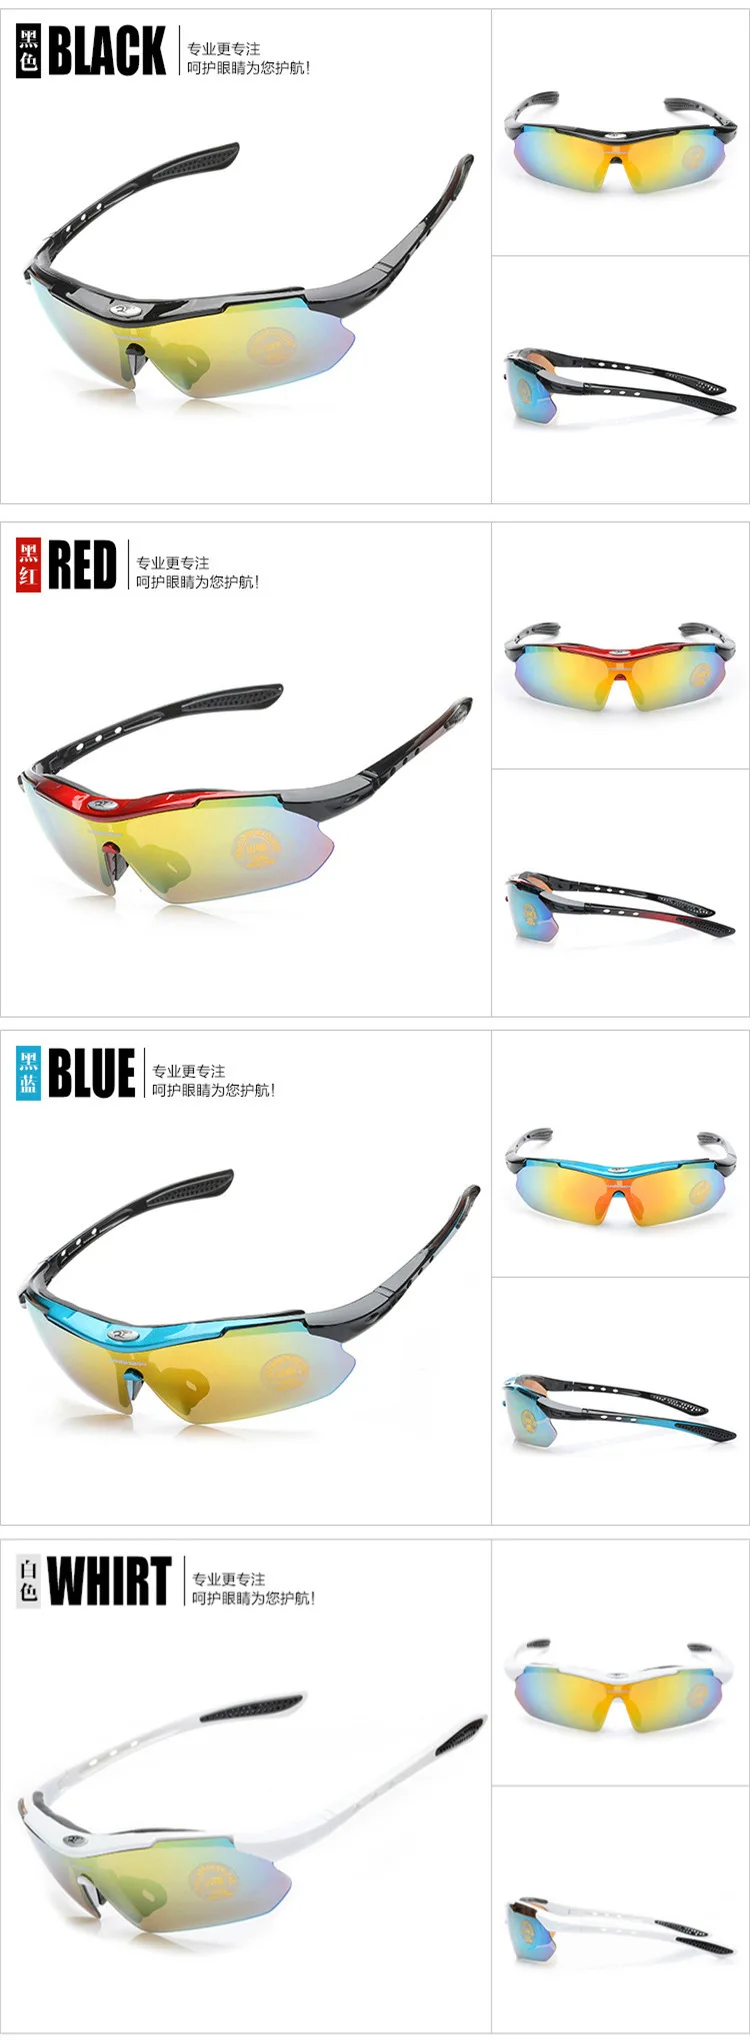 0089 очки для езды на открытом воздухе спортивные очки велосипед/оборудование велосипед солнцезащитные очки AliExpress